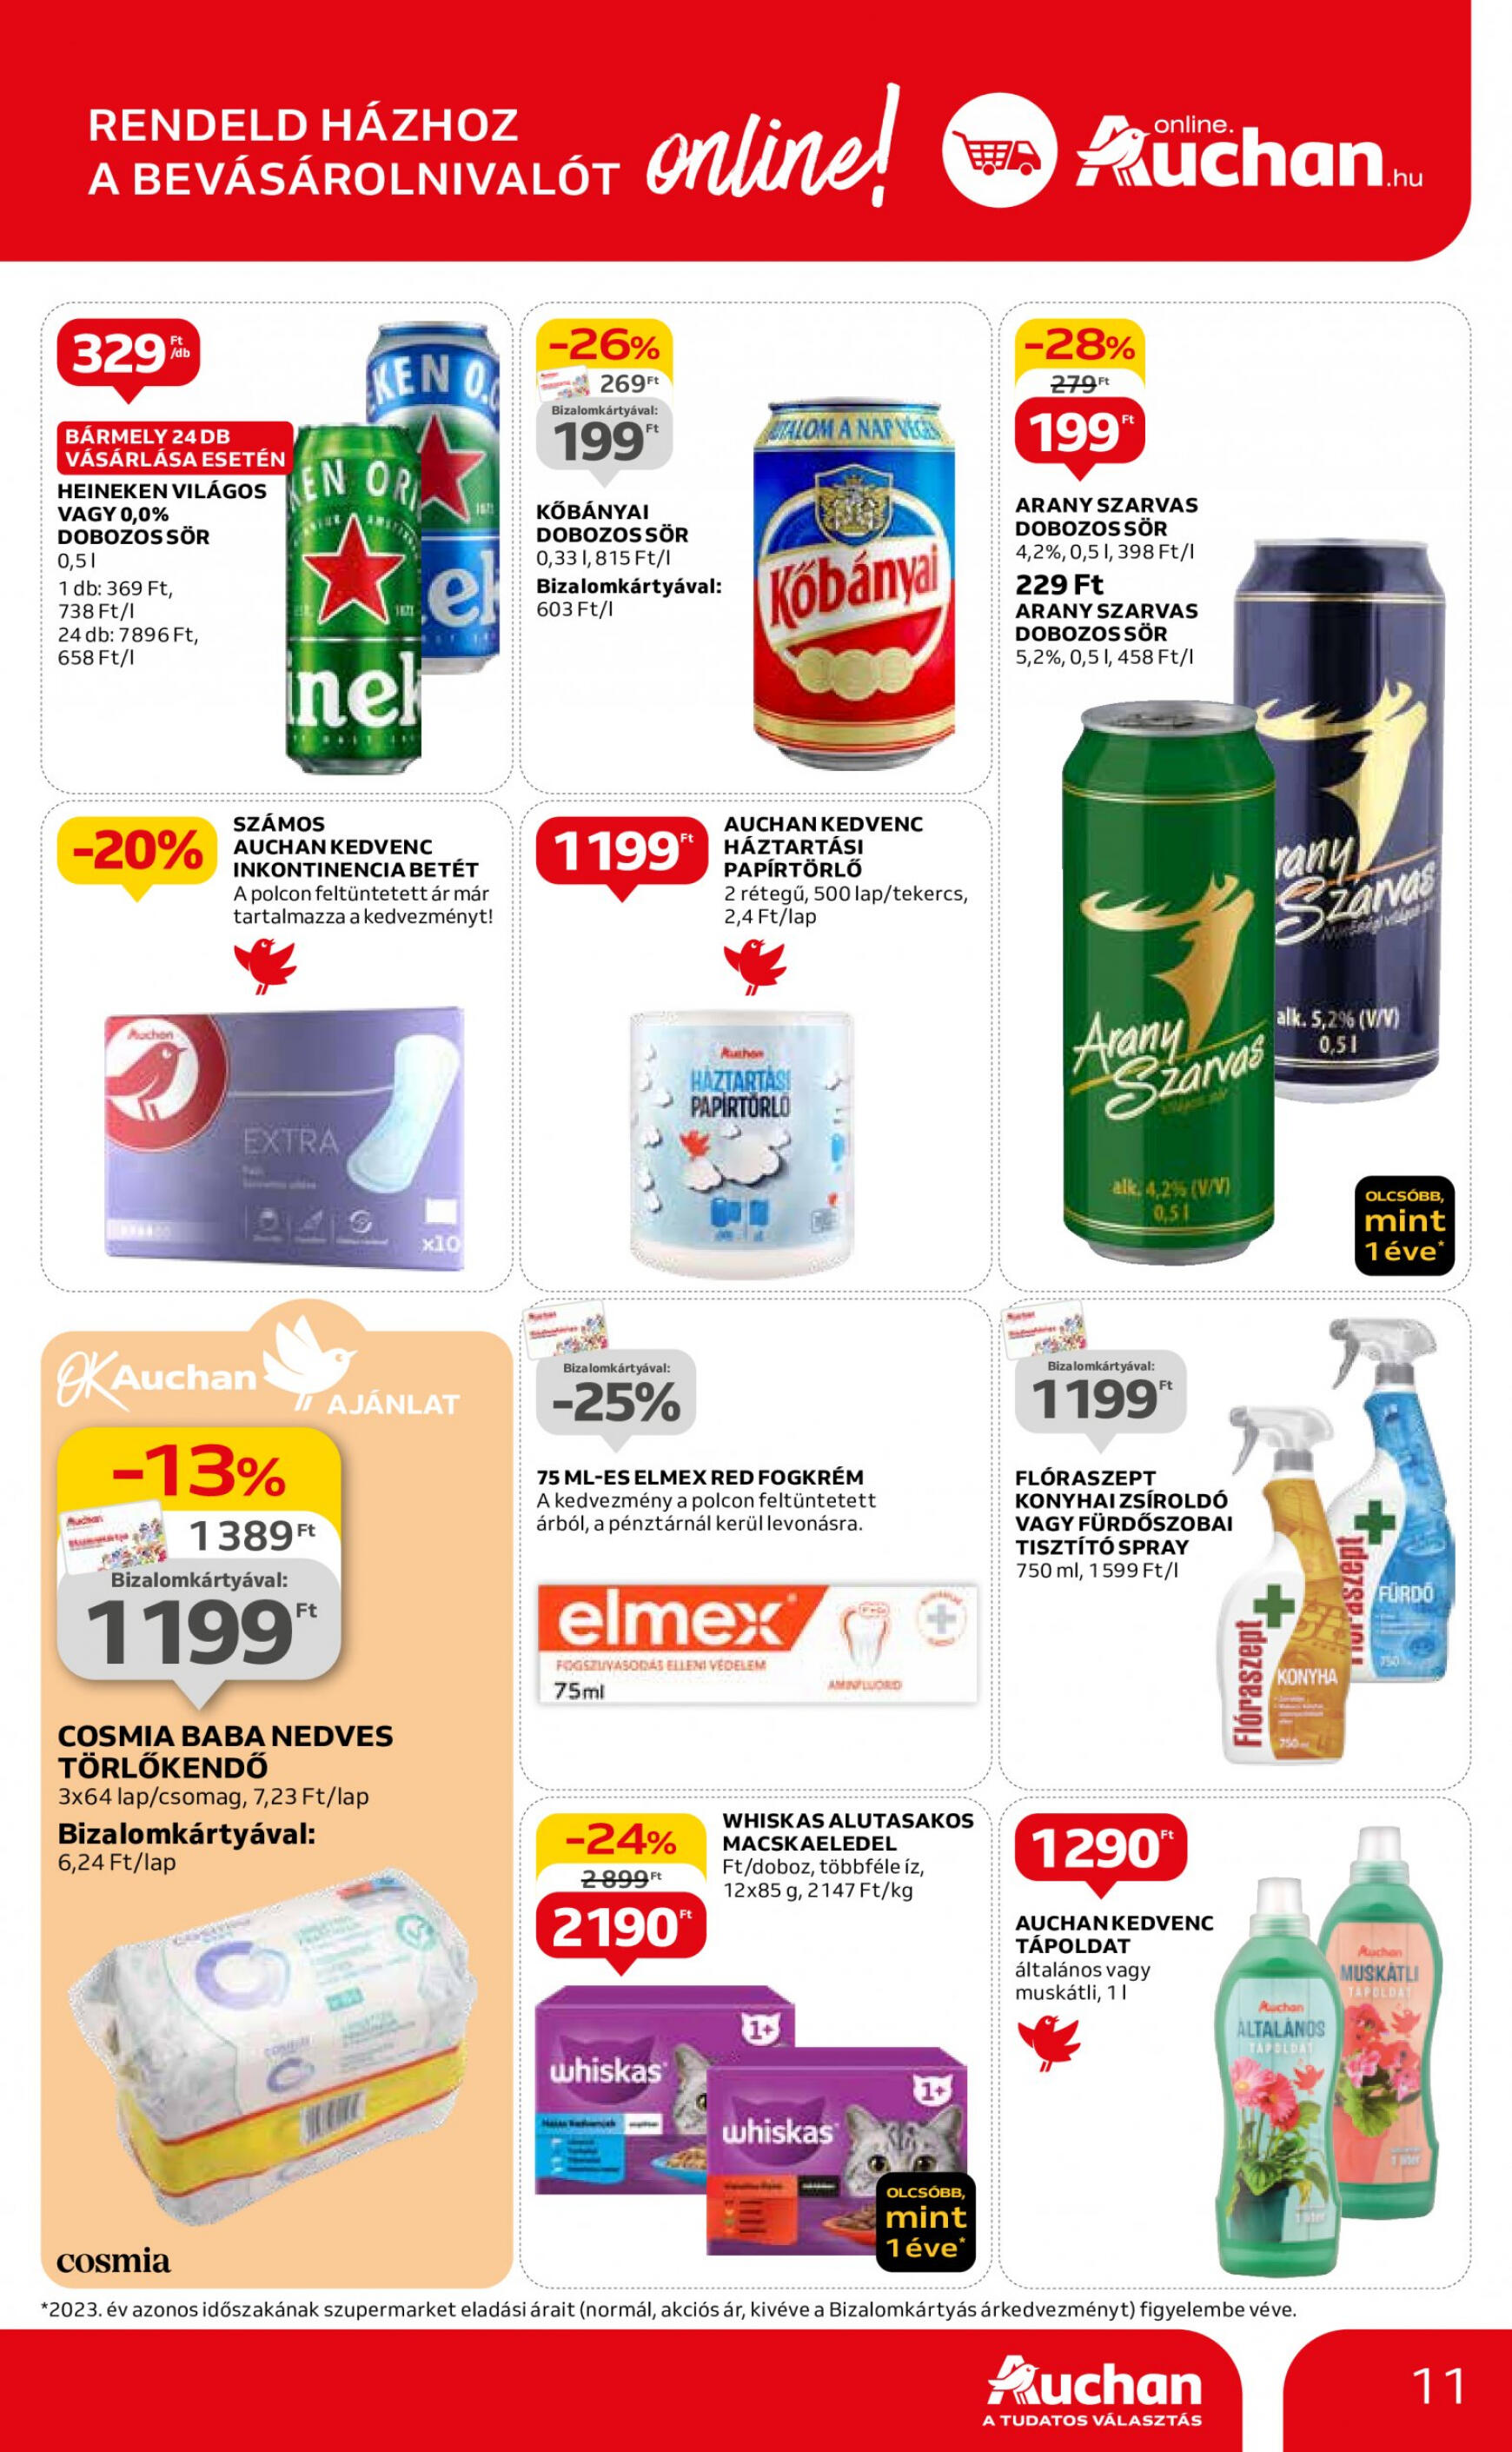 auchan - Aktuális újság Auchan szupermarket 05.16. - 05.22. - page: 11